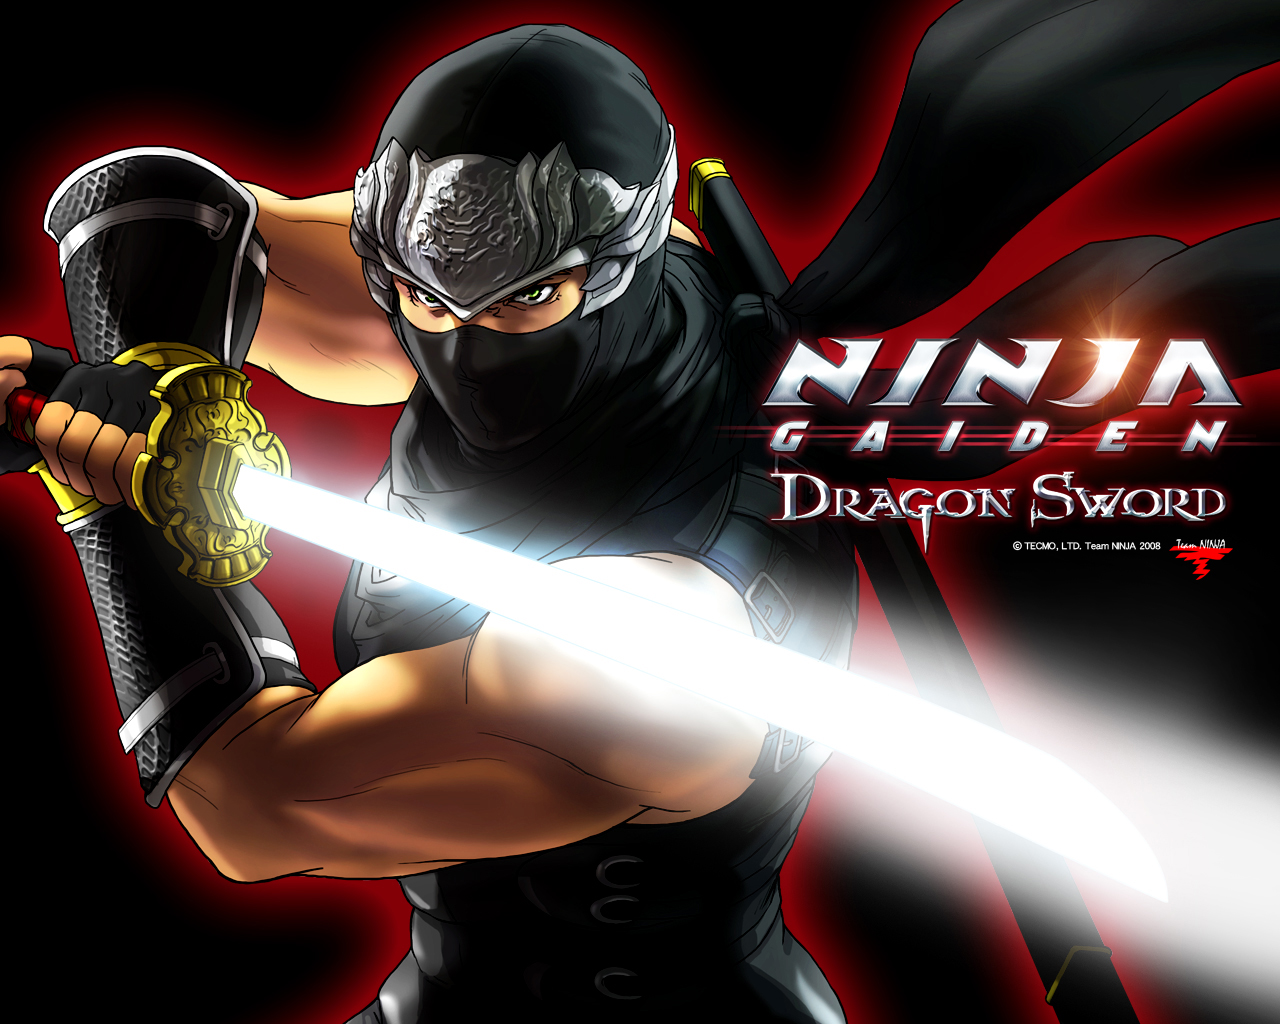 Ninja Gaiden Dragon Sword new game - Free desktop wallpapers download